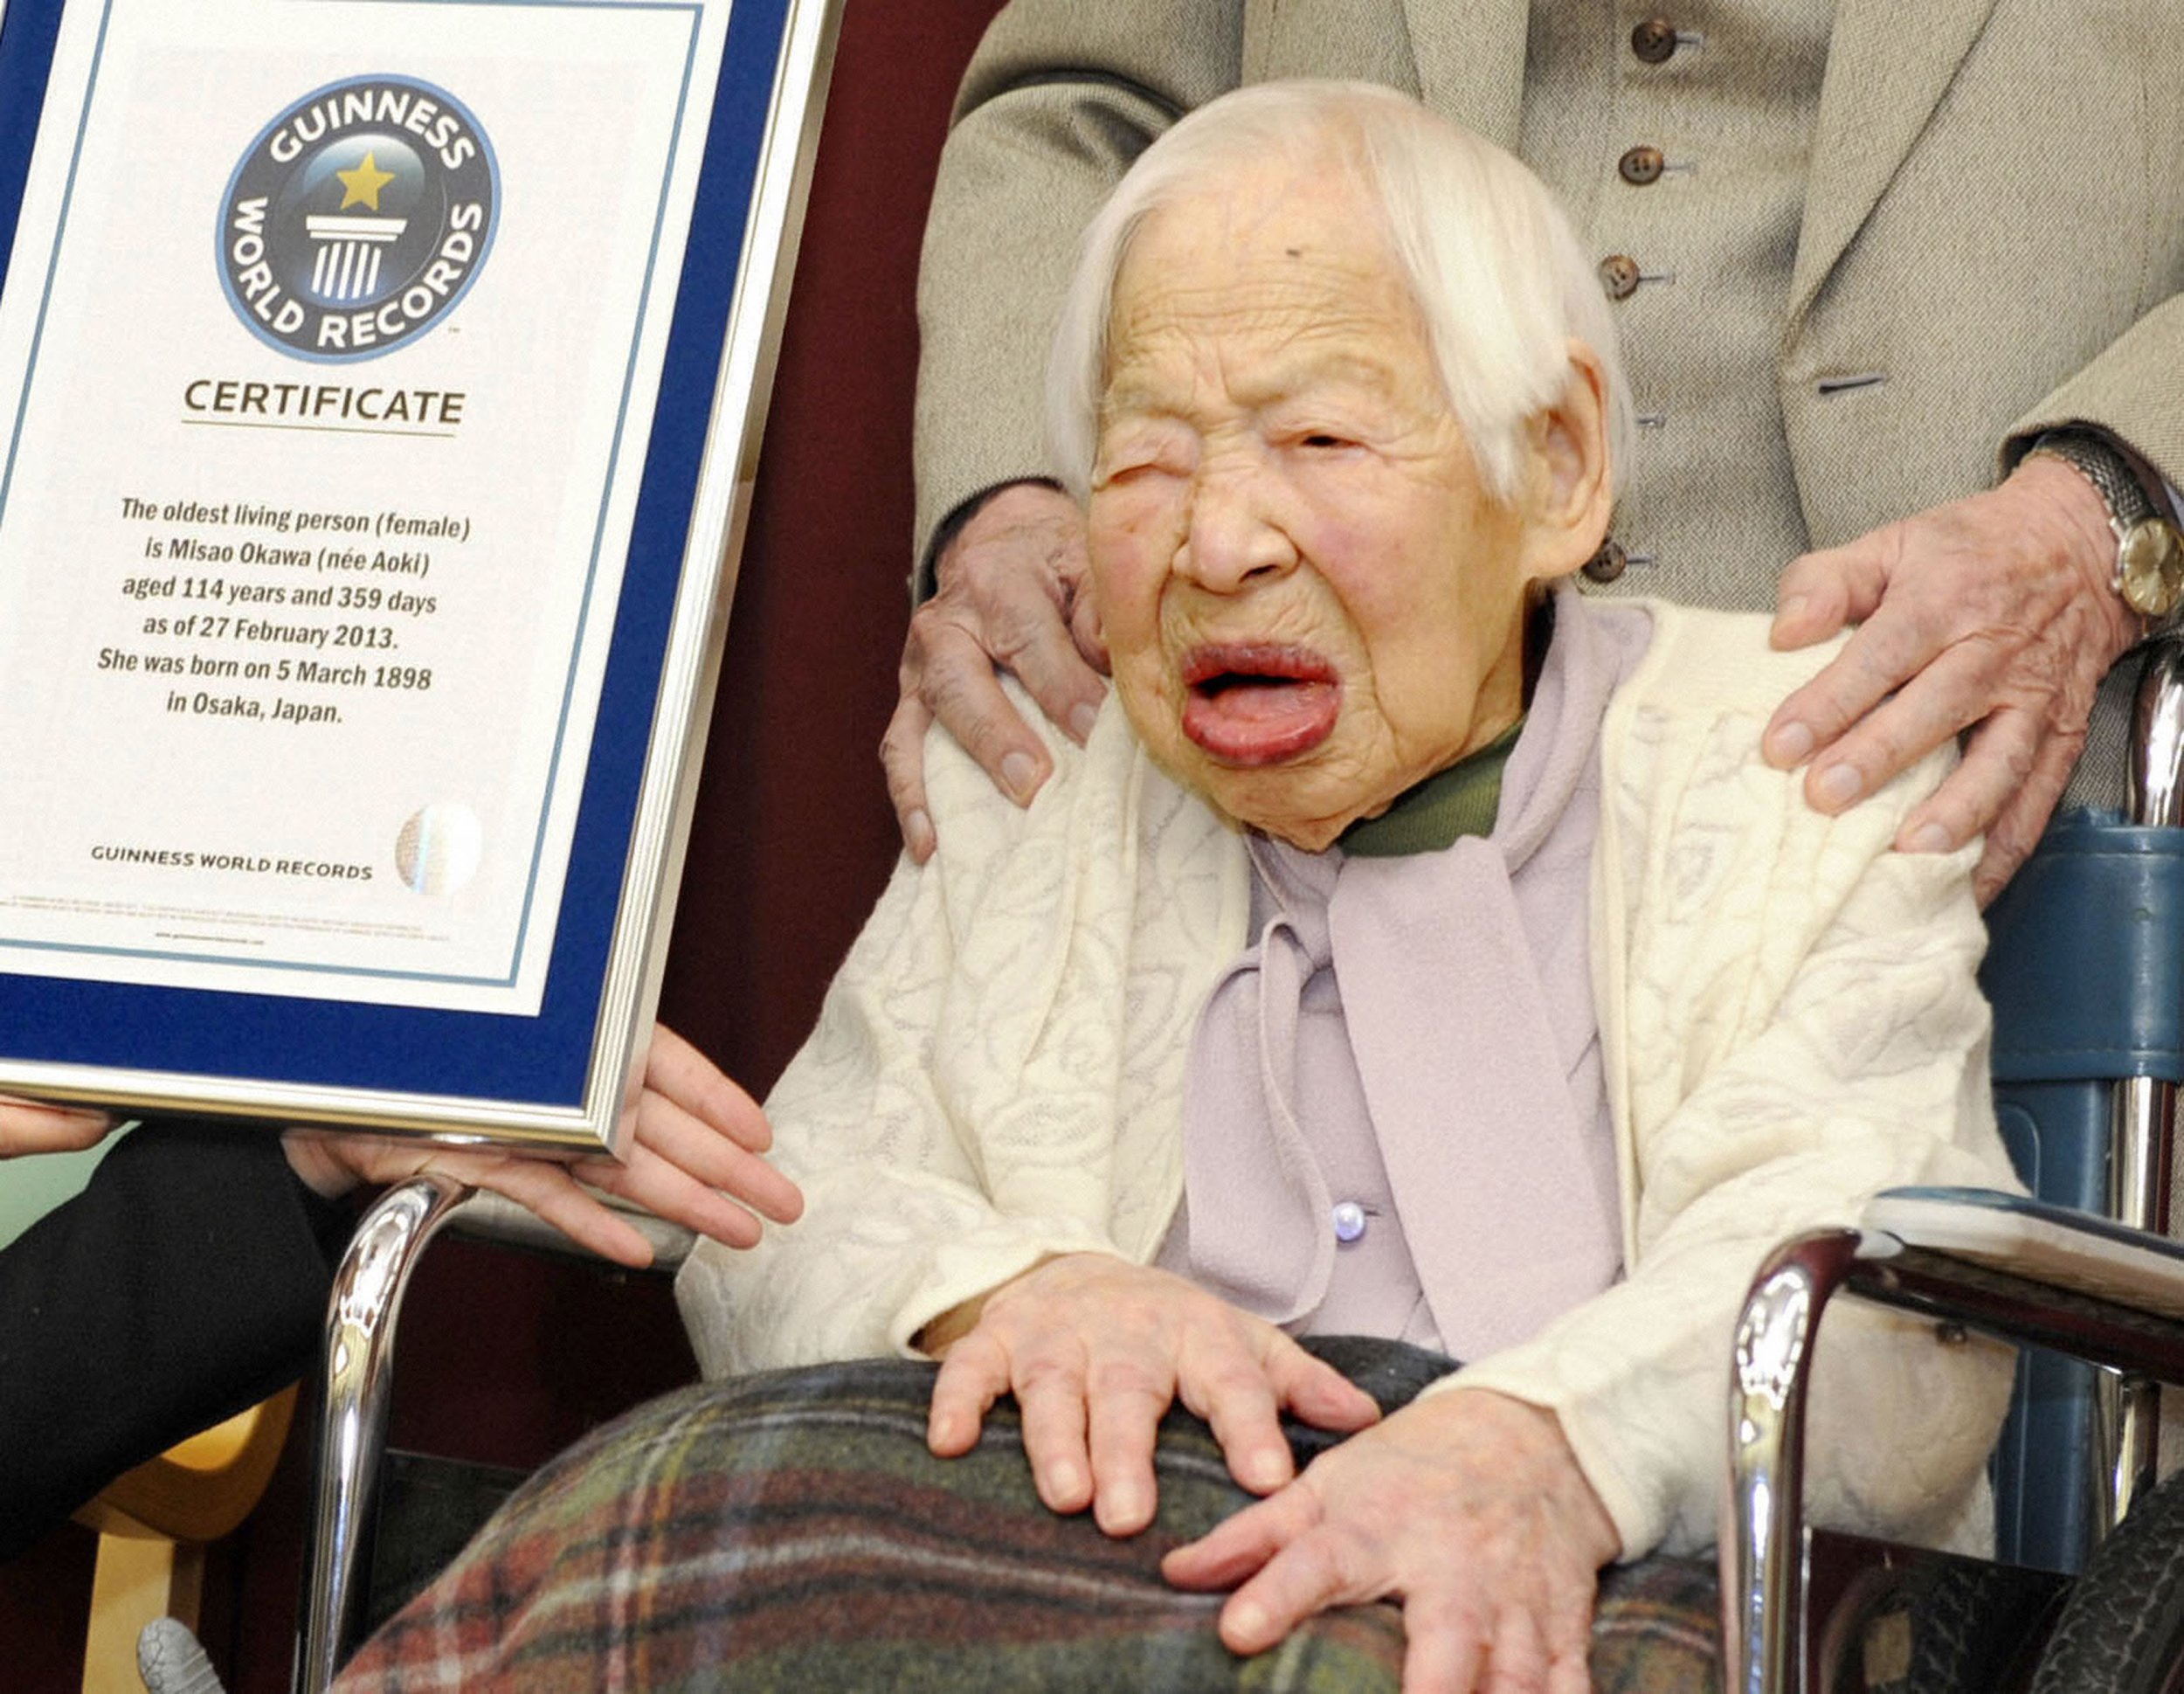 Максимально прожил человек. Дзироэмон Кимура 116 лет. Долгожитель Мисао Окава 117 лет. Мисао Окава список старейших людей в мире.